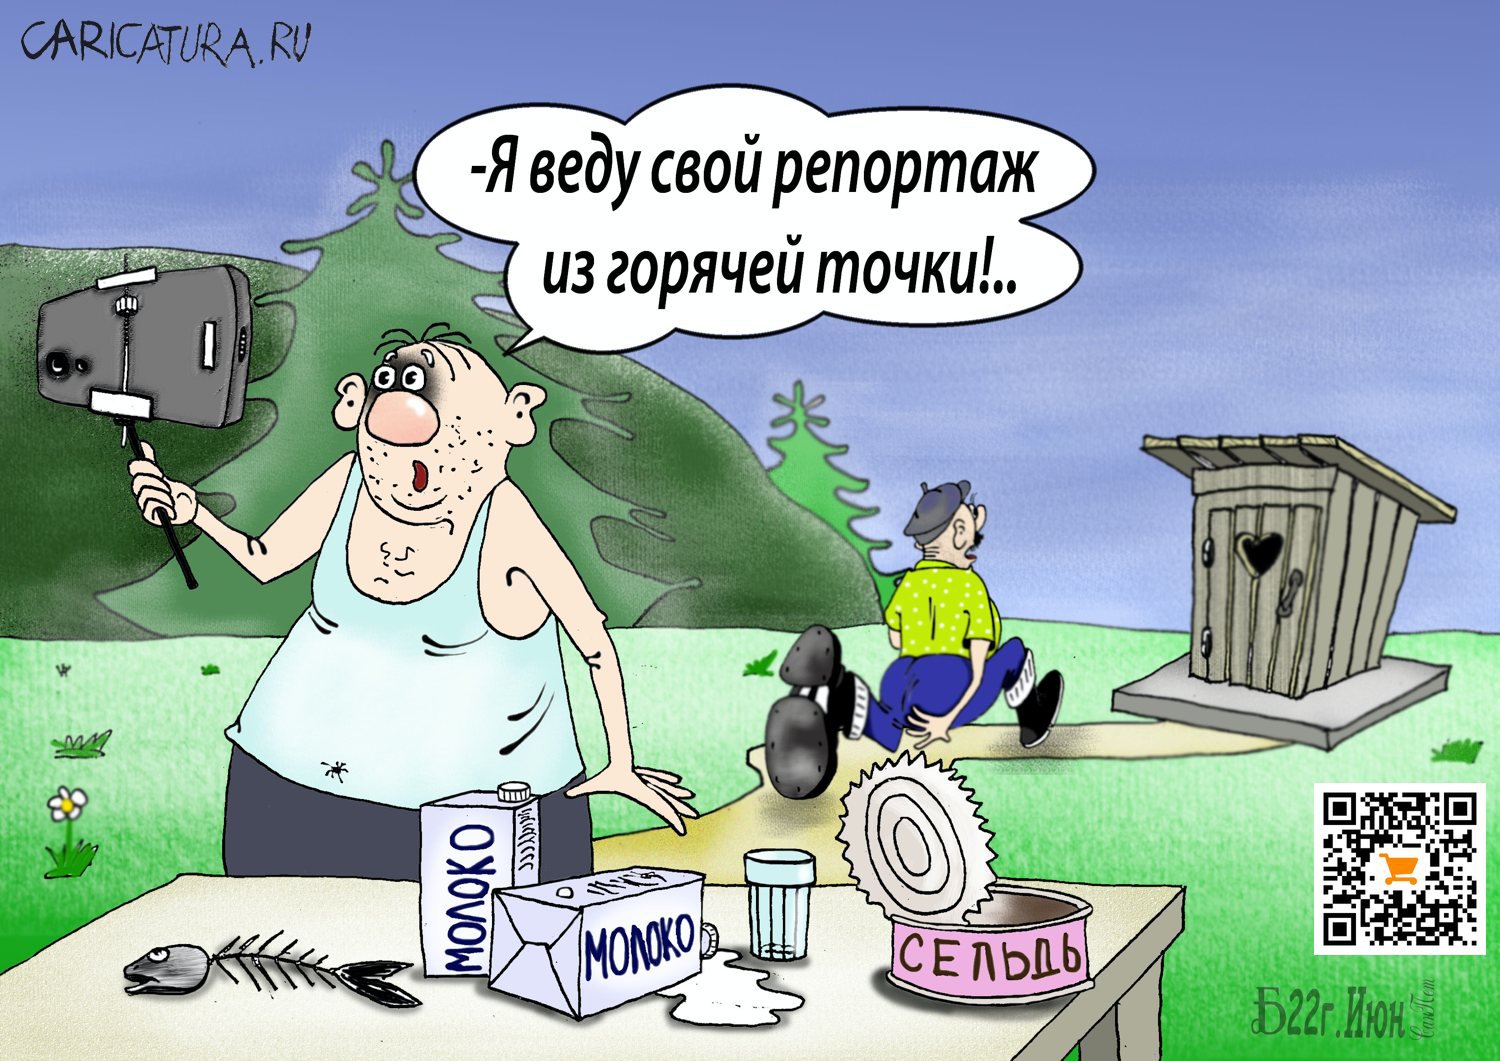 Карикатура "Про спецрепортаж", Борис Демин